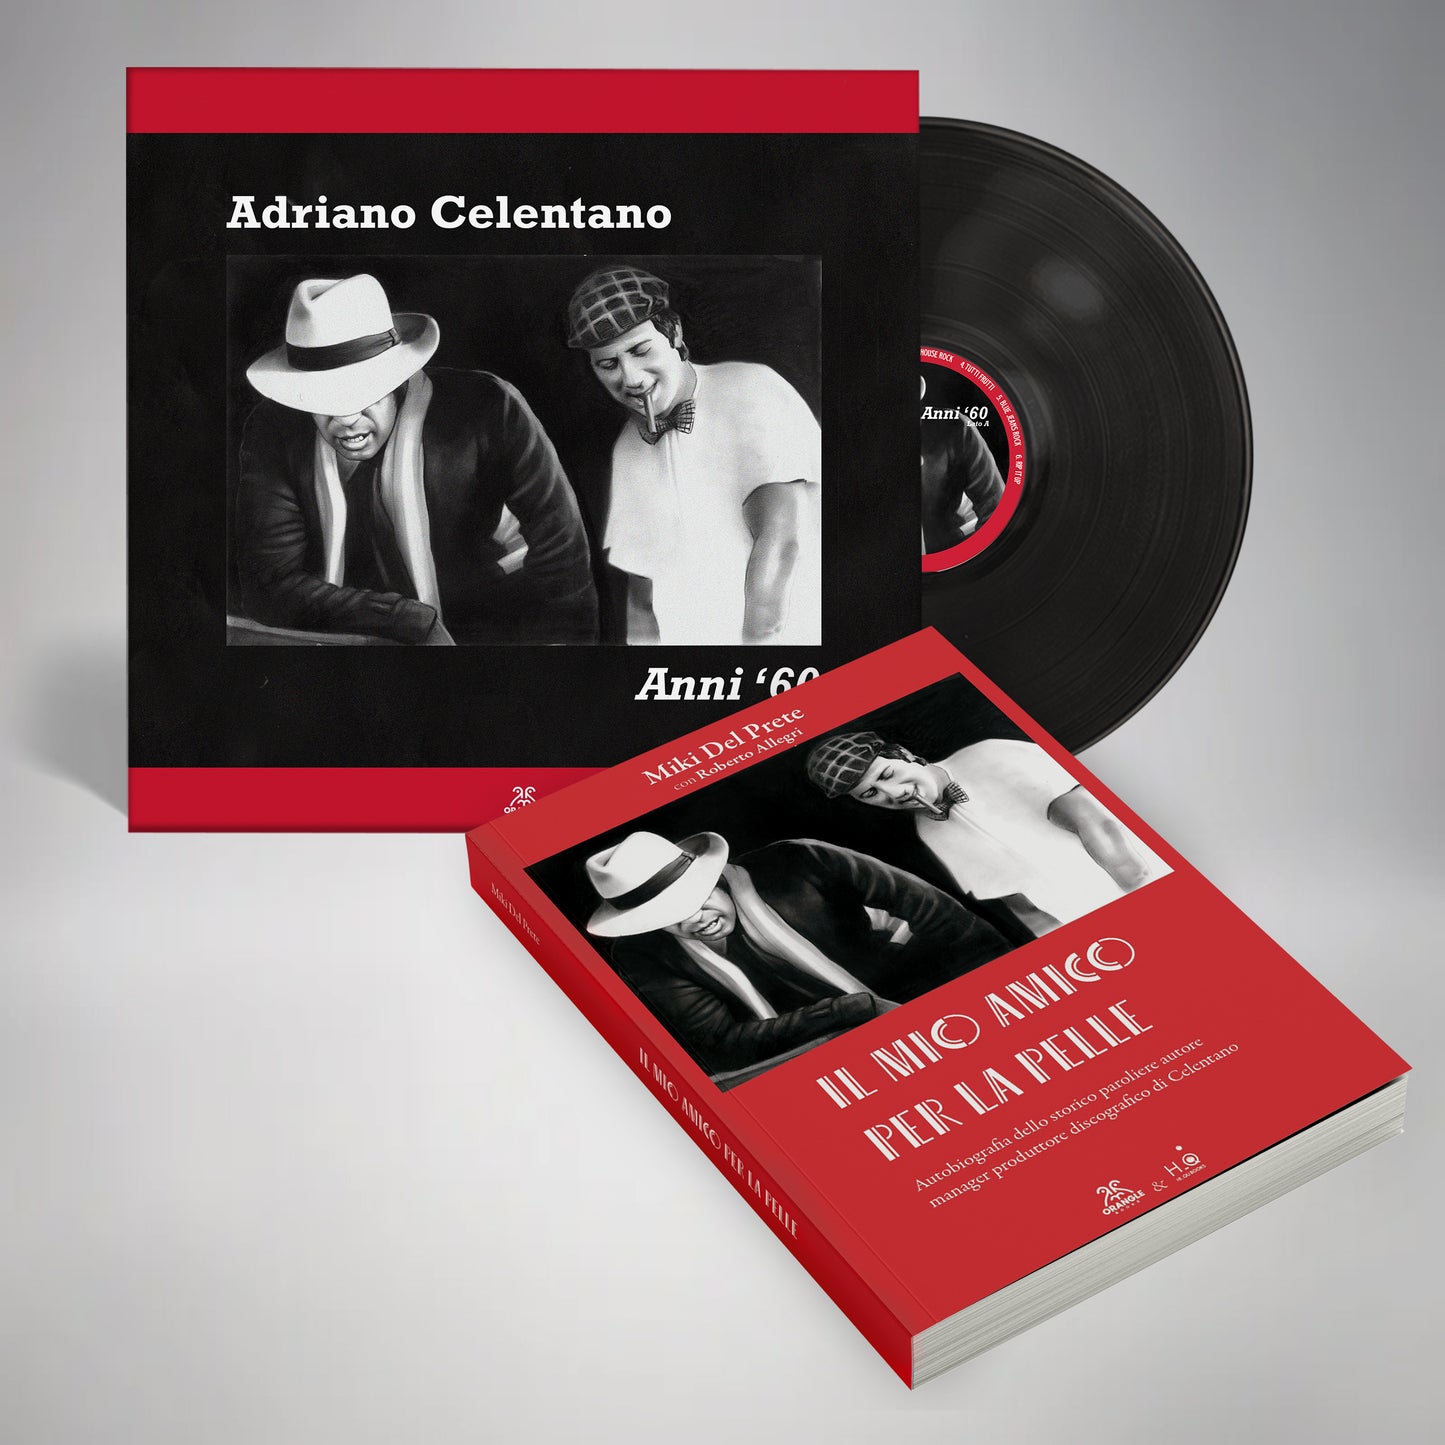 Bundle Adriano Celentano, Vinile "Anni 60" + Libro "Il mio Amico per la pelle"